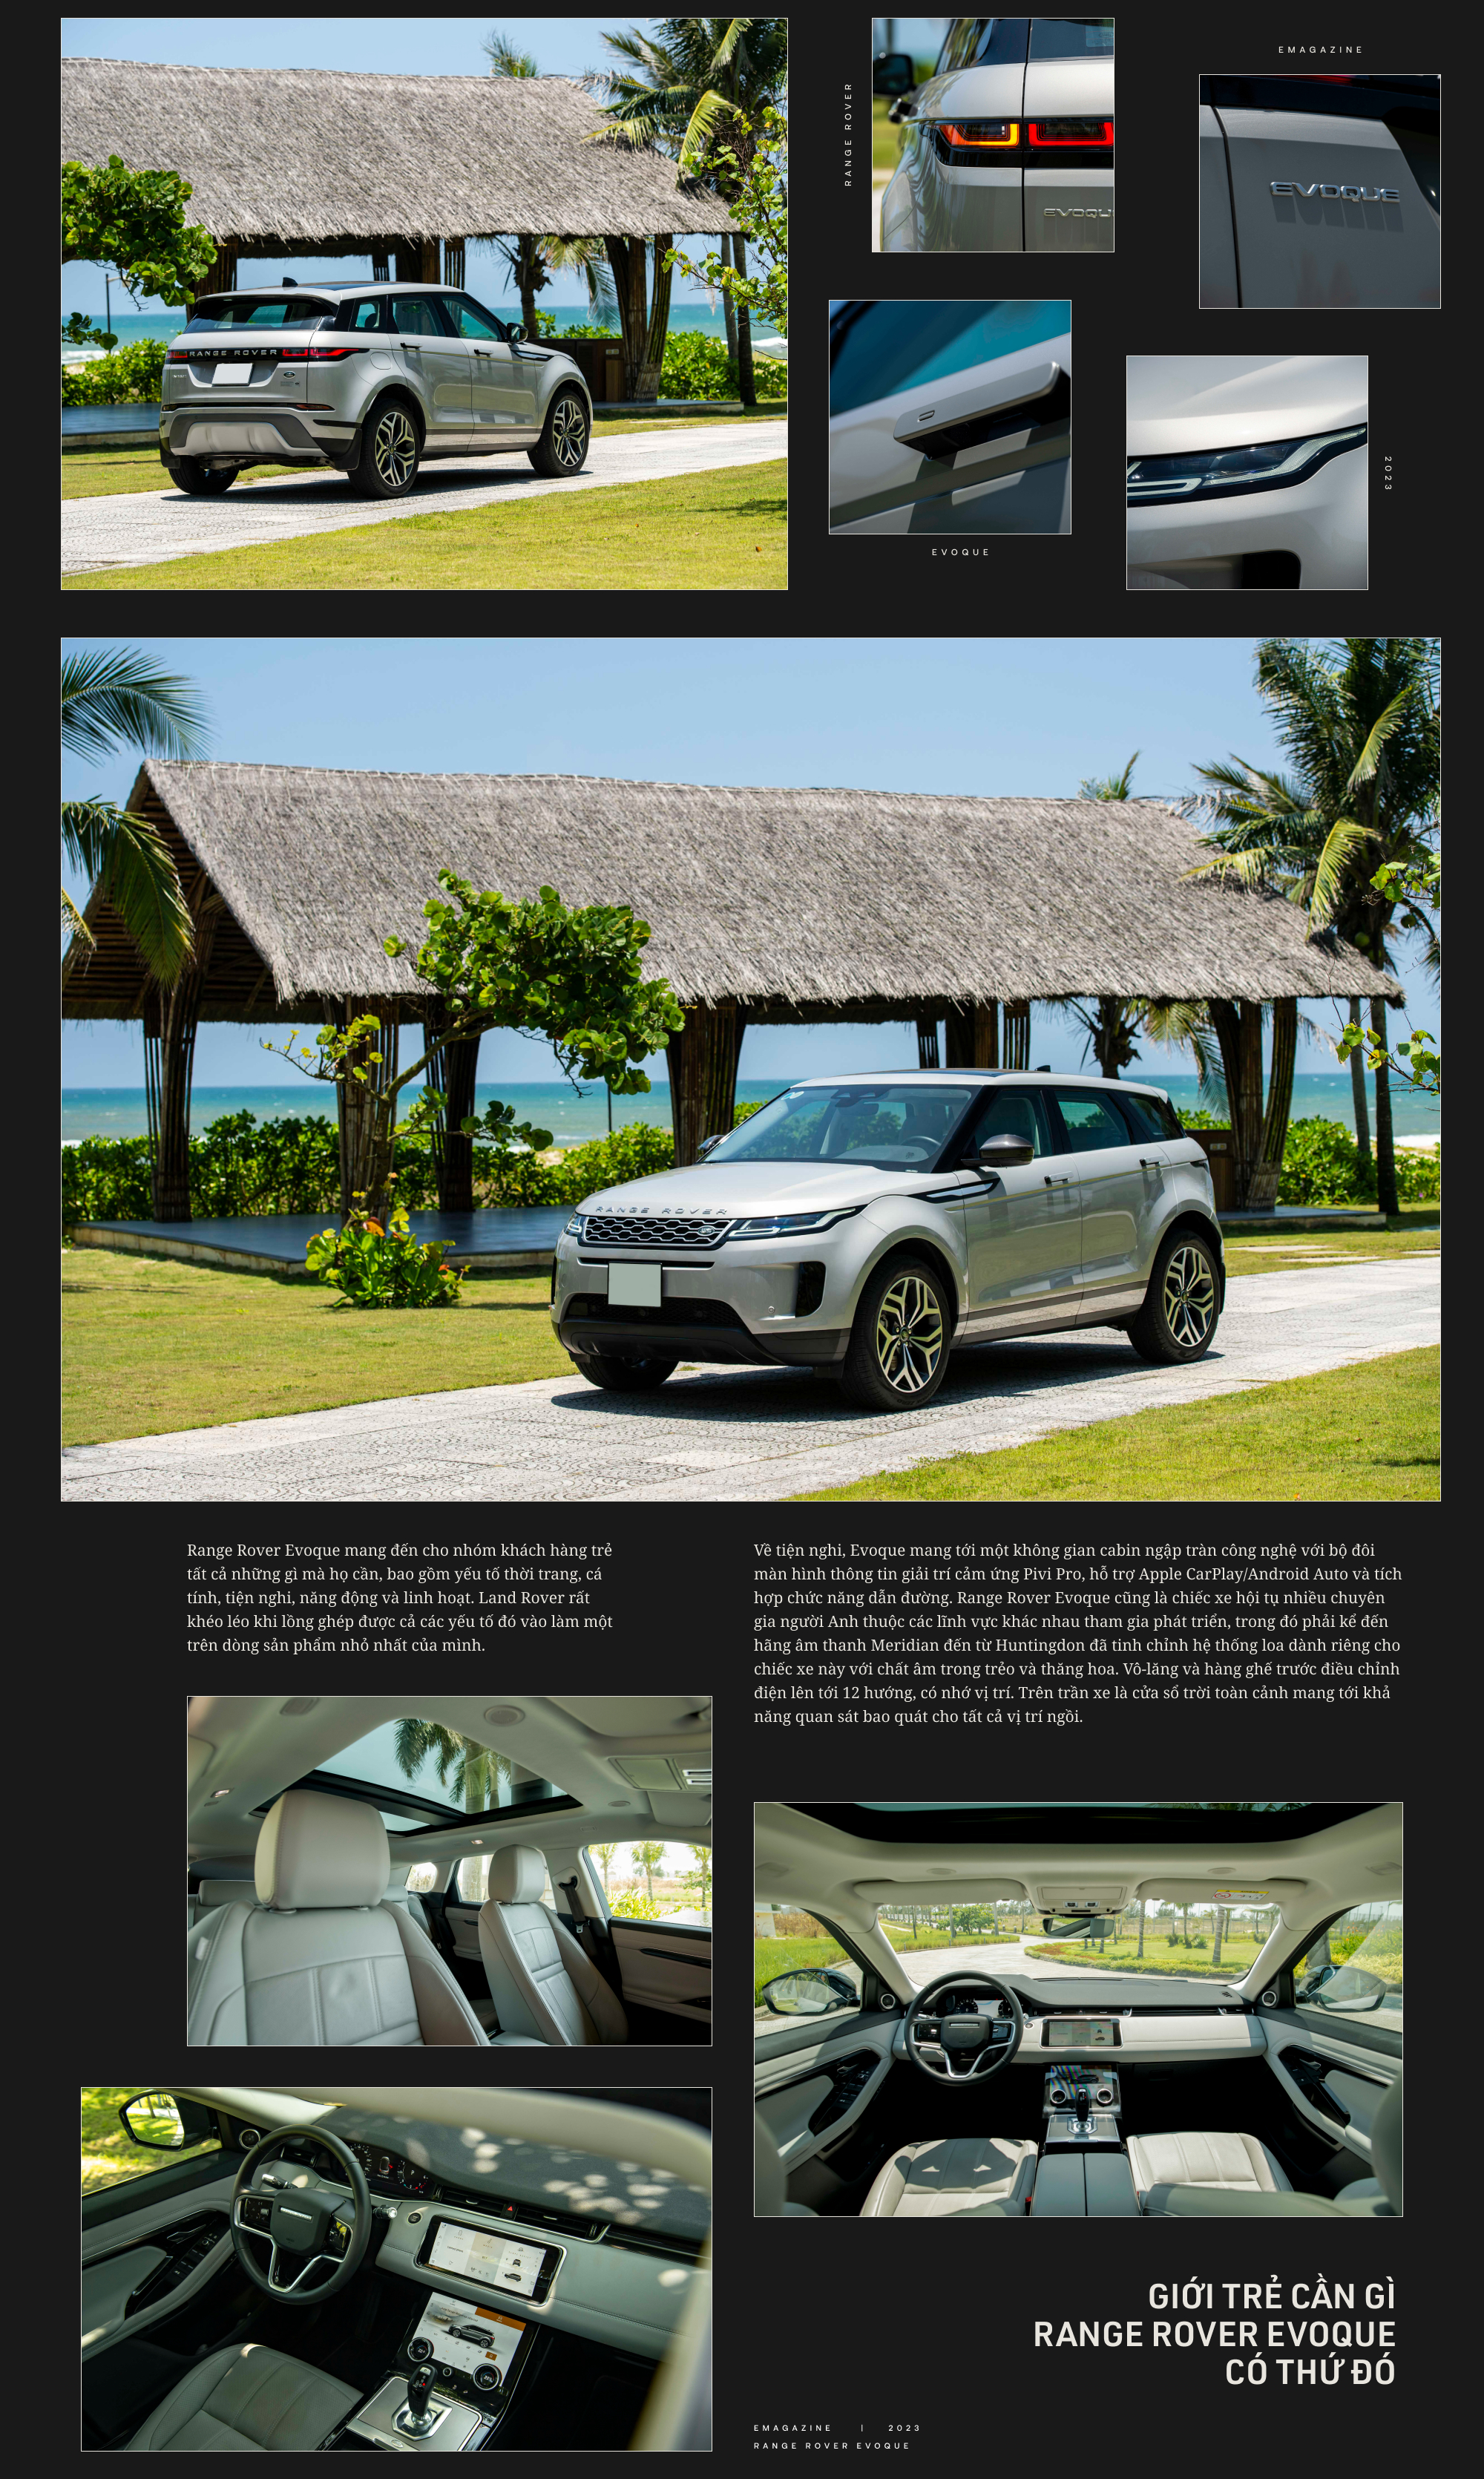 Châu Bùi chọn Range Rover Evoque: GenZ hiện đại khó tính trong việc chọn xe, nhưng cởi mở với những đột phá mới - Ảnh 6.